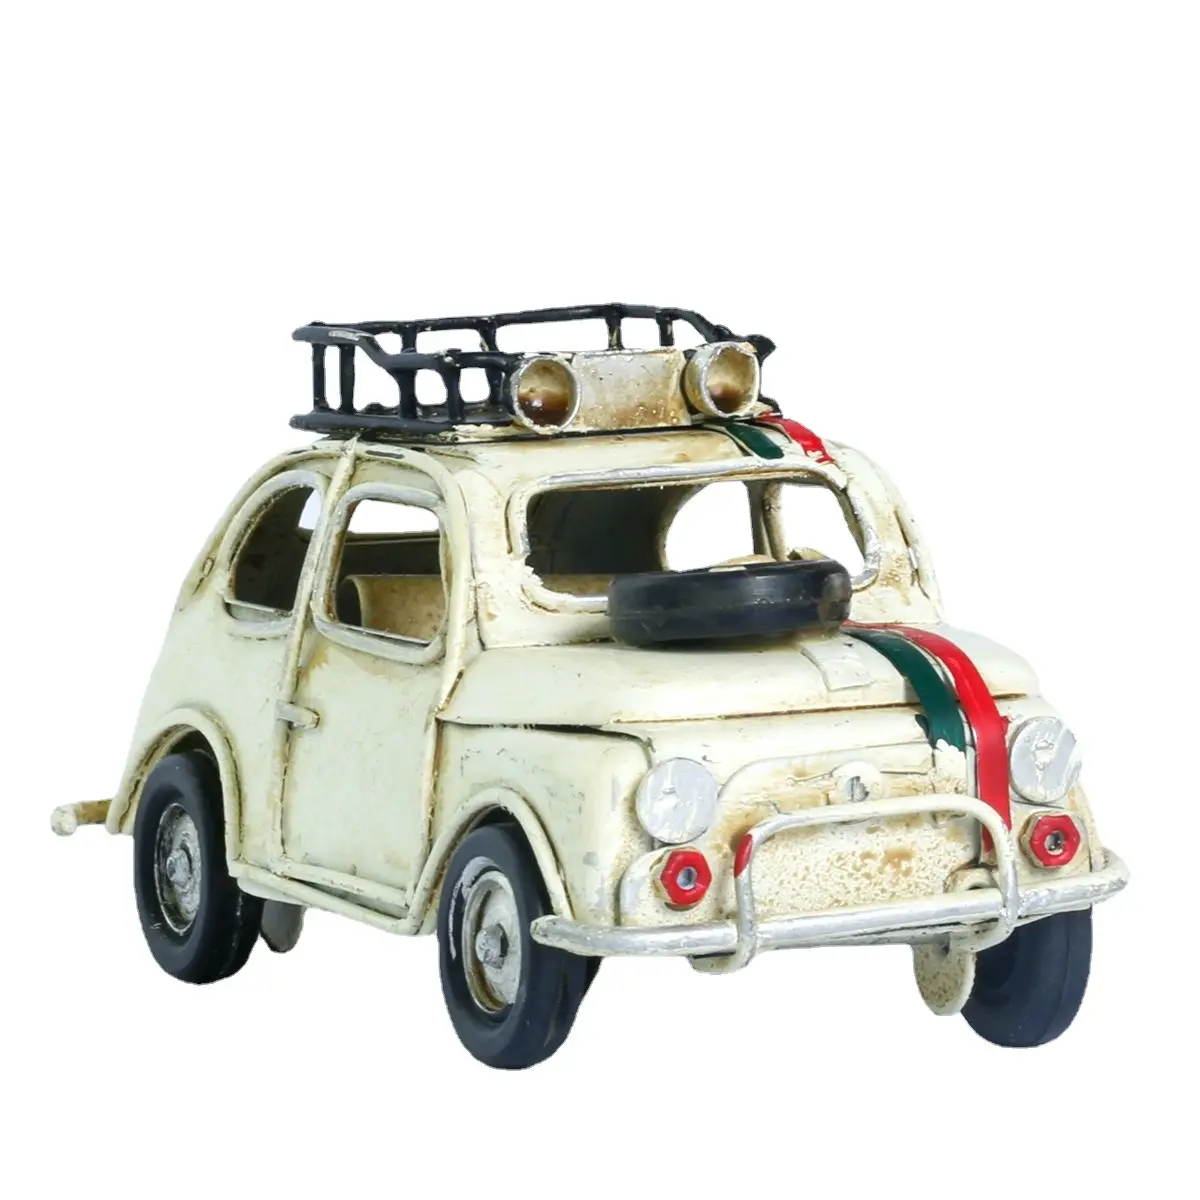 Decoração de carro em miniatura, antiguidade, alta qualidade, decoração de carro de metal, coleção e modelo, carro para venda, artesanato, presente, decoração